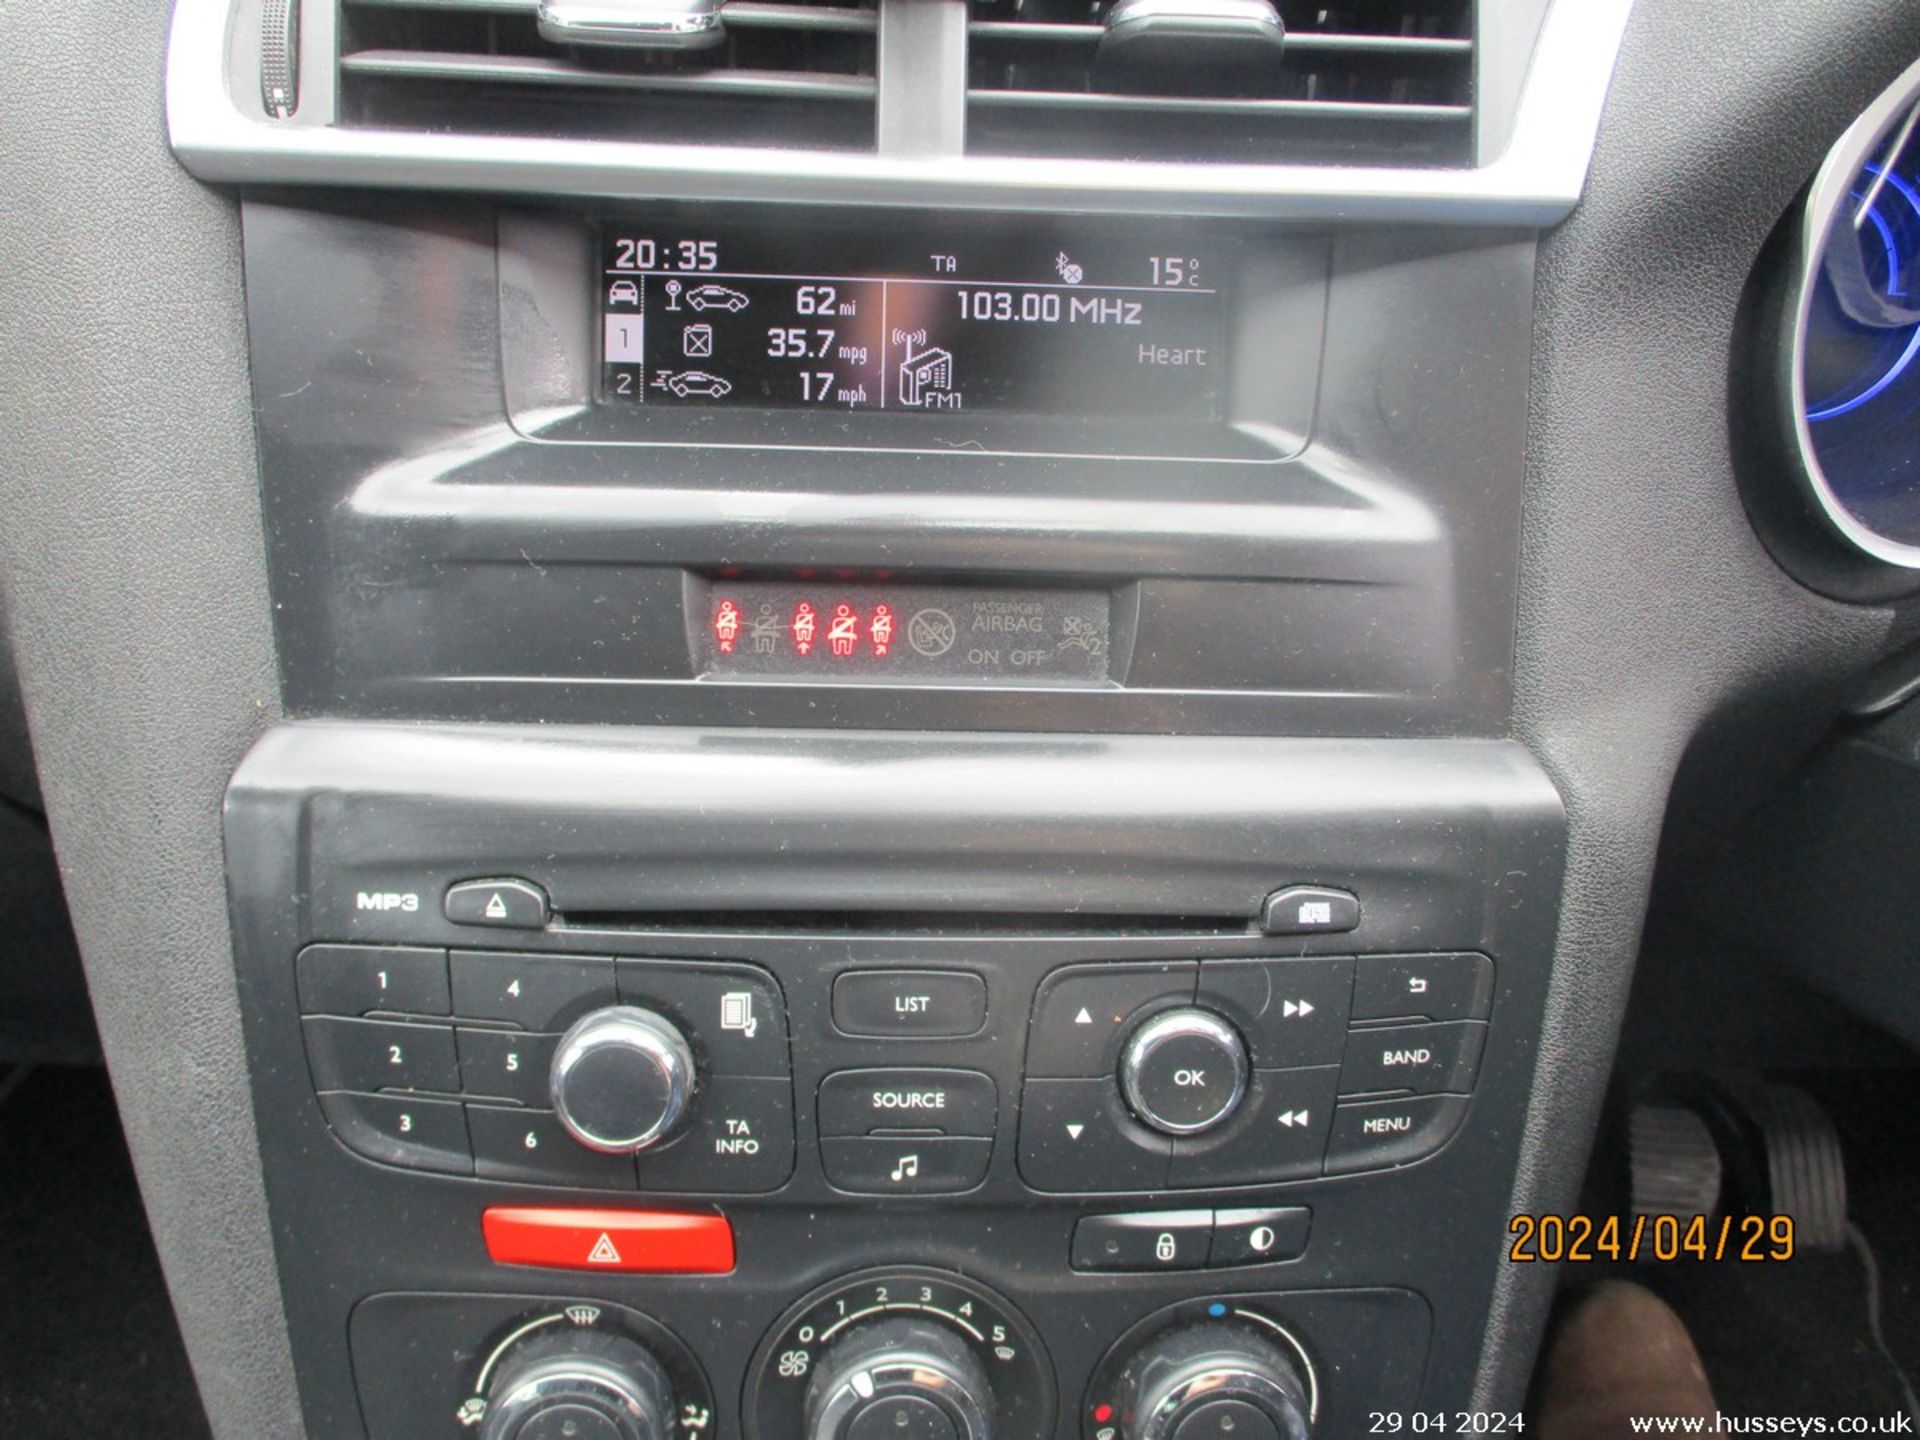 13/13 CITROEN DS4 DSIGN HDI - 1560cc 5dr Hatchback (Black, 135k) - Image 29 of 29